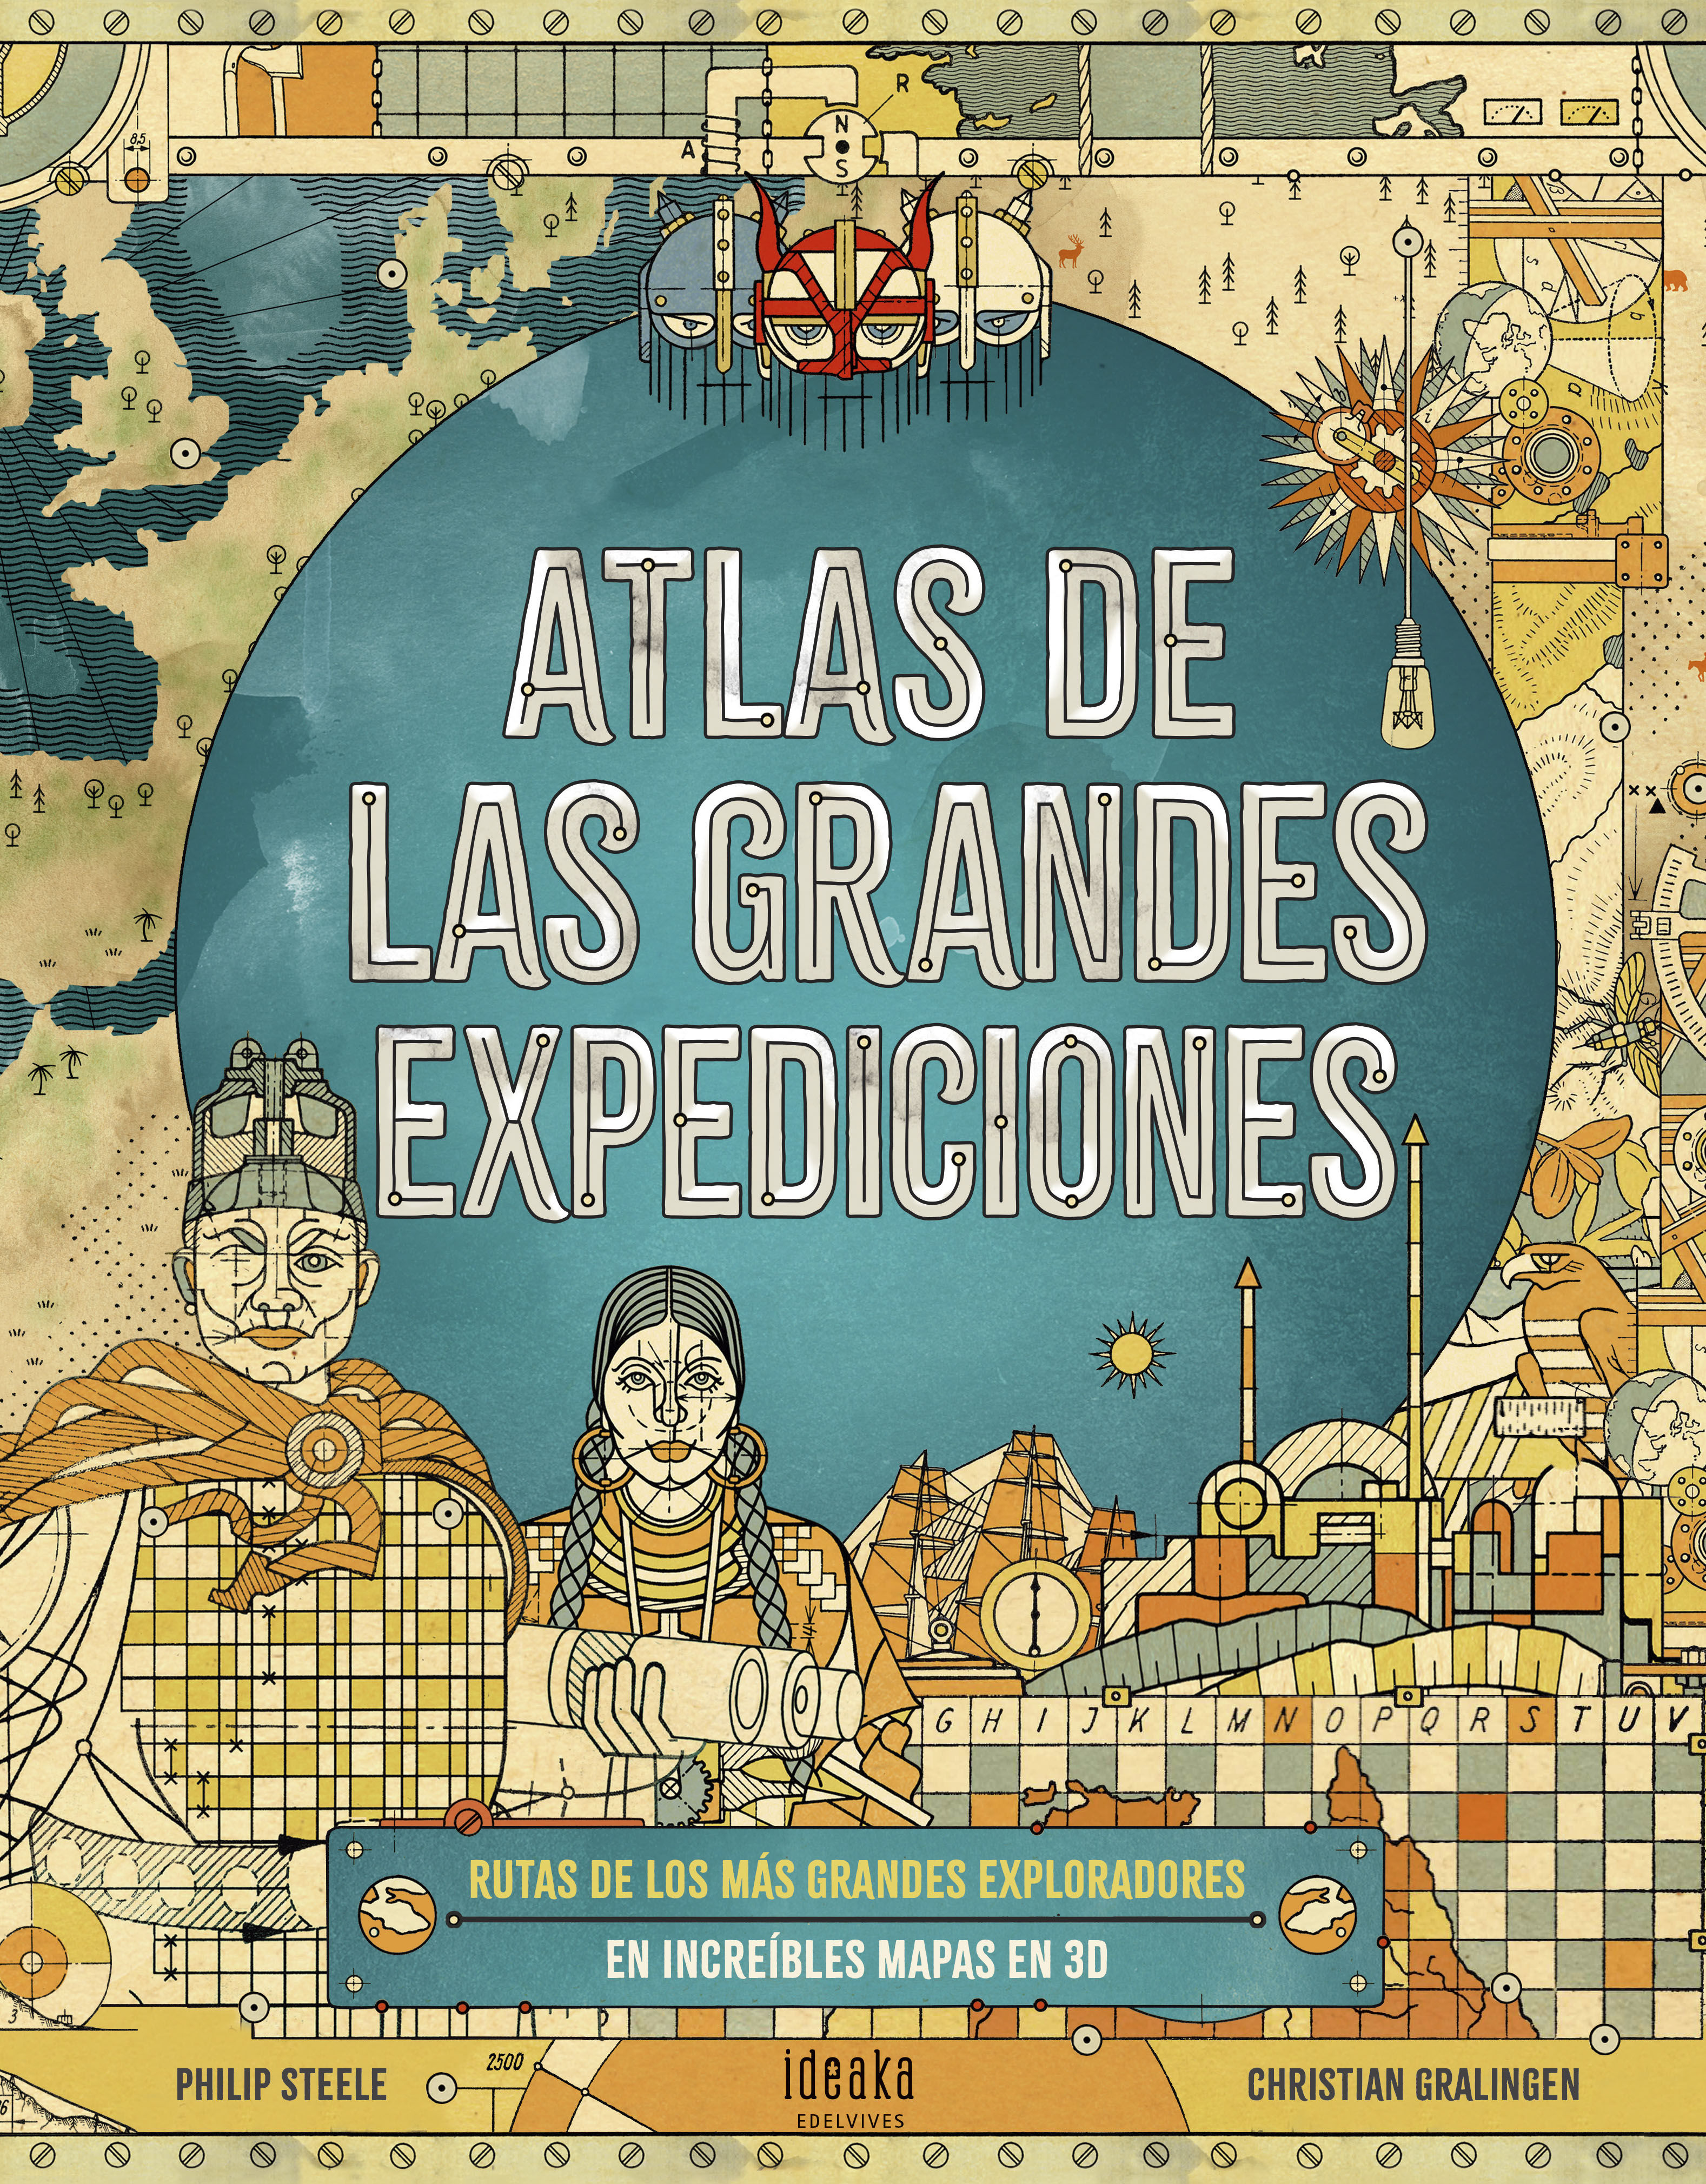 ATLAS DE LAS GRANDES EXPEDICIONES. 